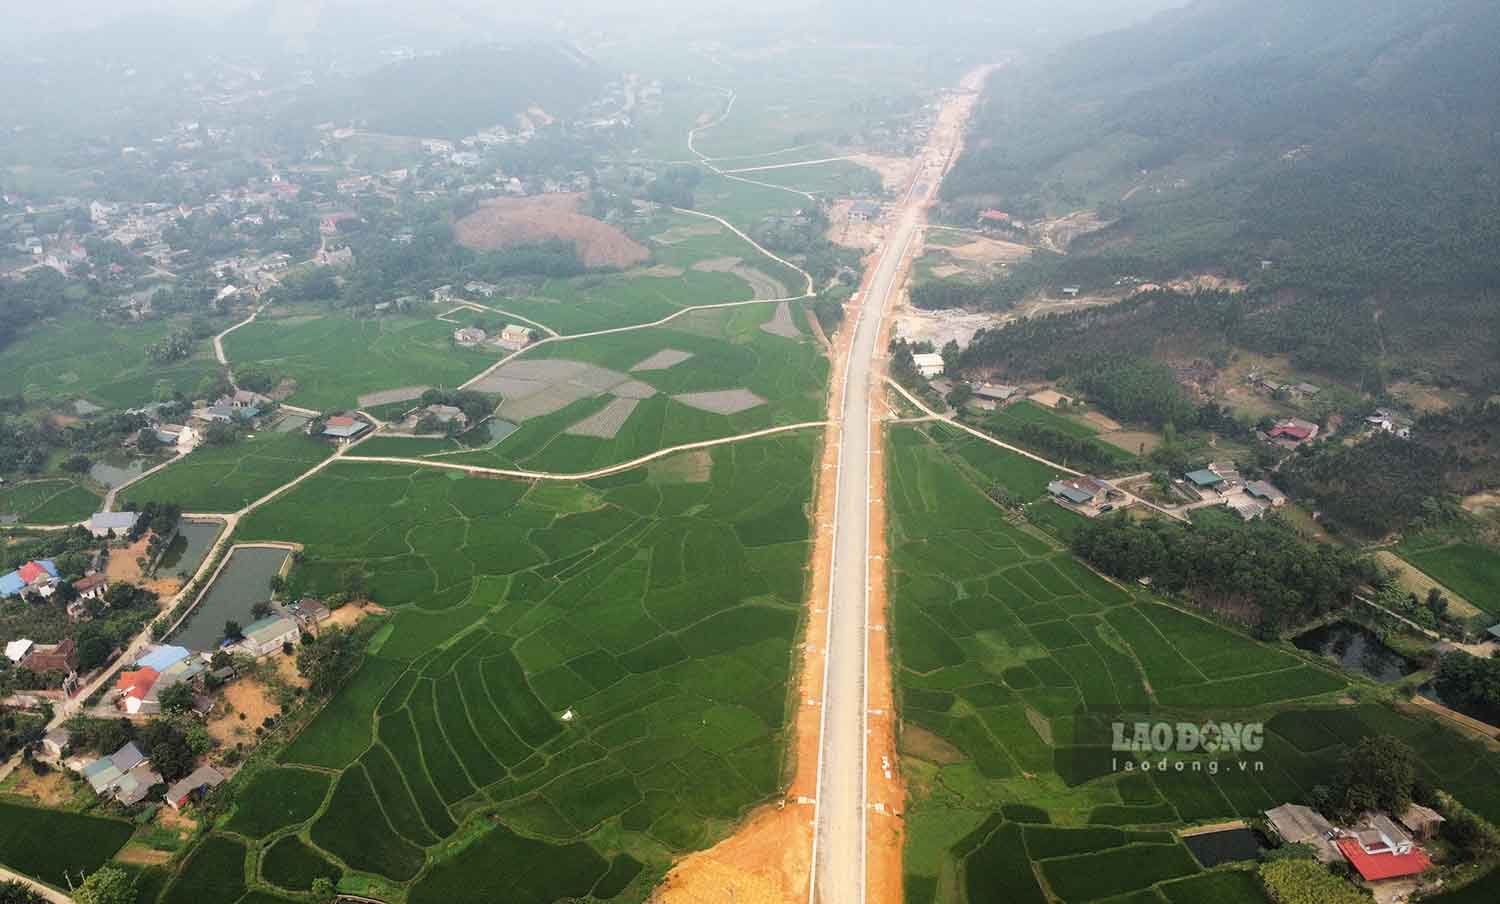 Dự án đường từ Khu du lịch Suối khoáng Mỹ Lâm đến Quốc lộ 2D kết nối với đường cao tốc Tuyên Quang – Phú Thọ dài 8,9 km do Sở Giao thông vận tải tỉnh Tuyên Quang làm chủ đầu tư. Công trình được khởi công cuối năm 2021, dự kiến hoàn thành trong năm 2024.